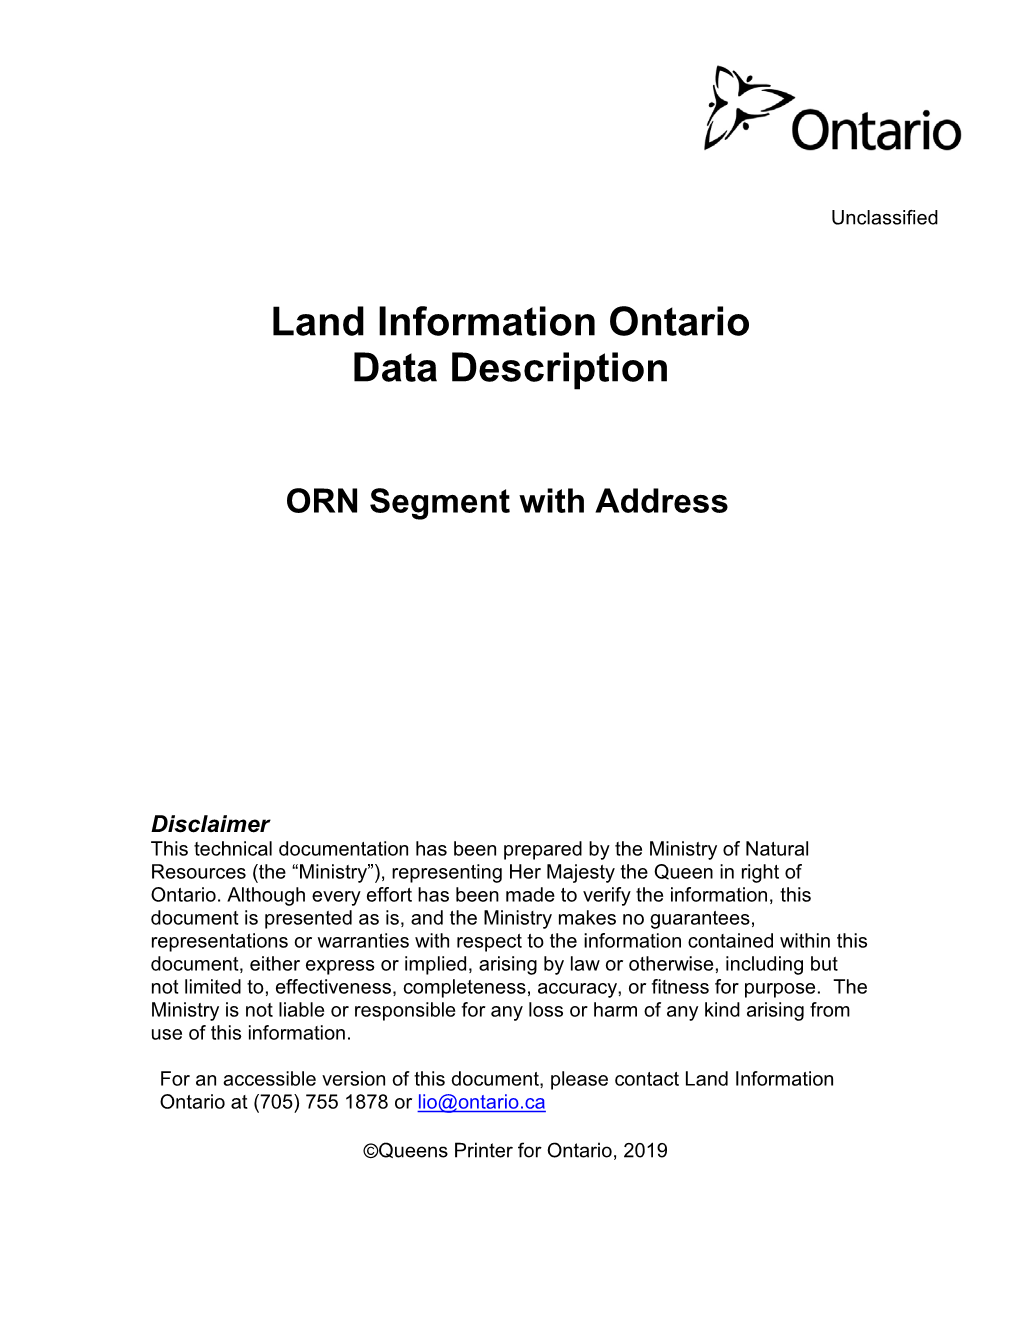 Land Information Ontario Data Description